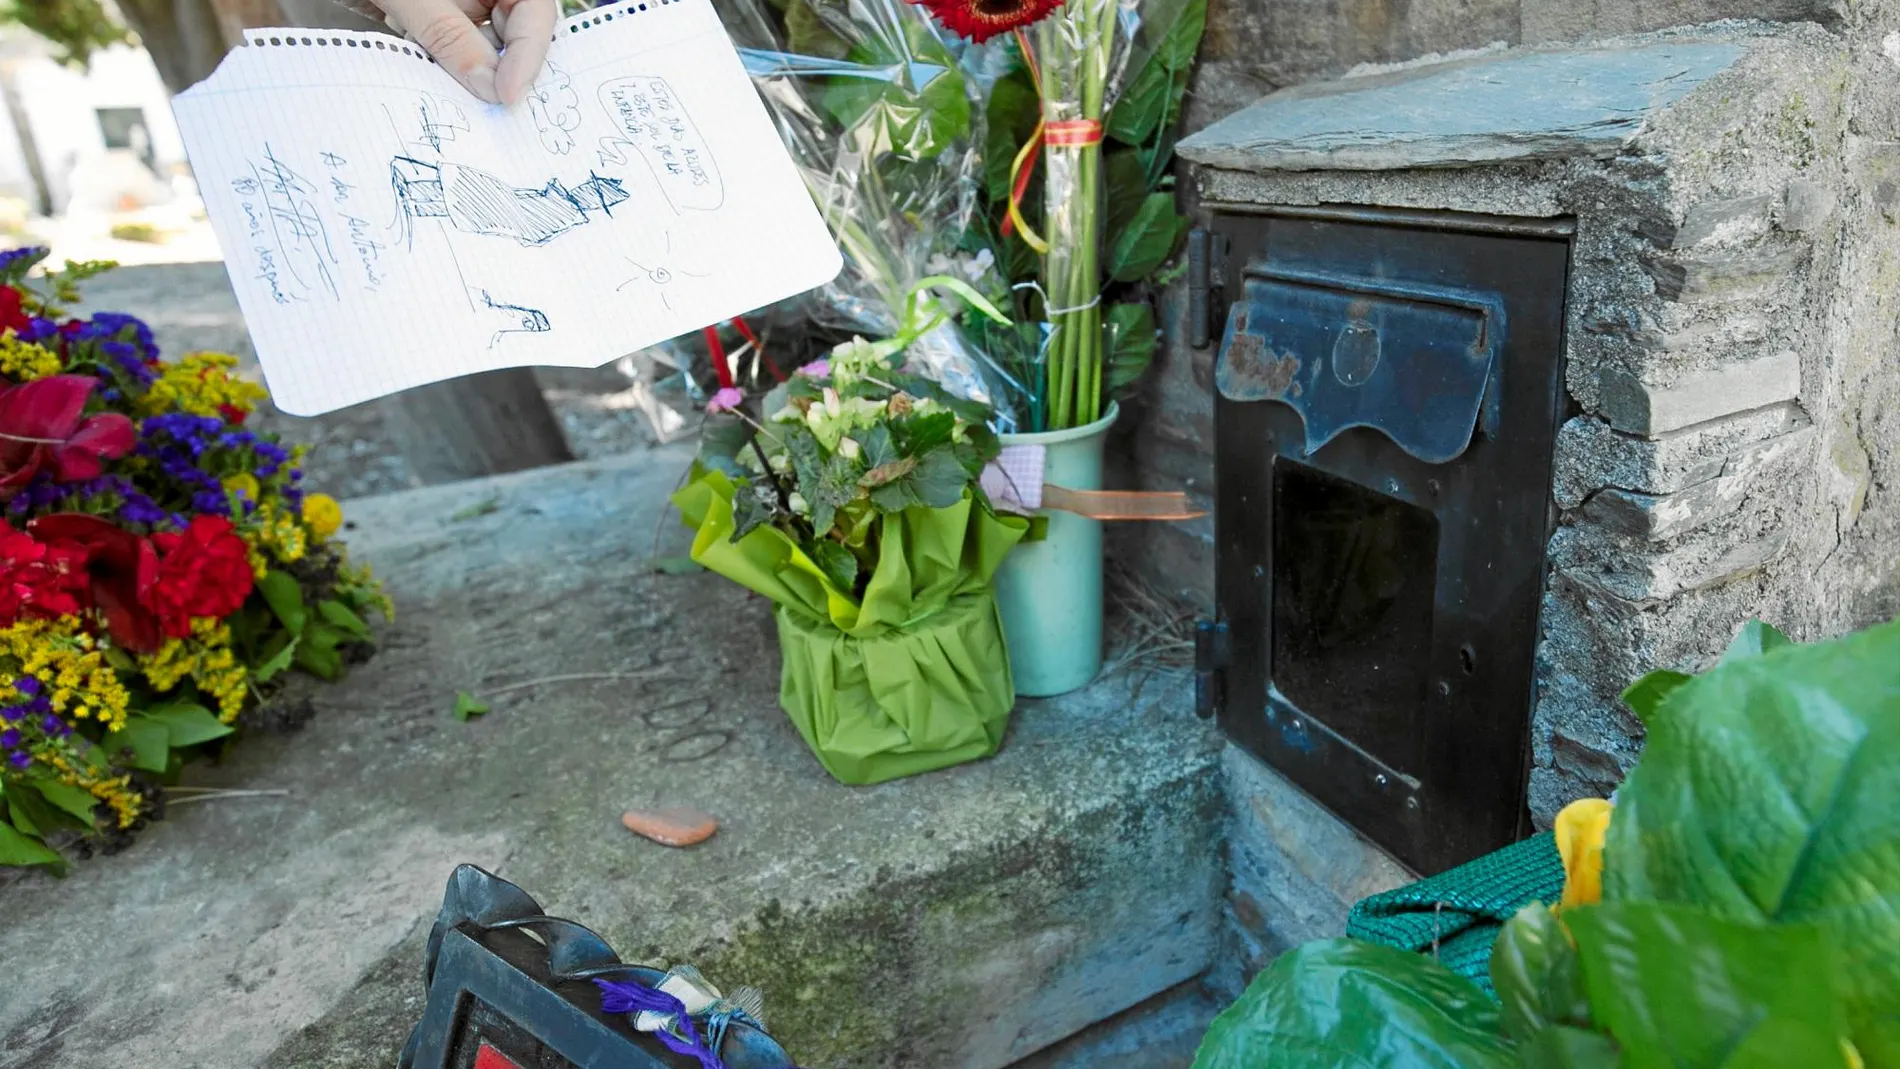 Tumba de Antonio Machado, donde sus lectores todavía continúan dejando flores y recuerdos